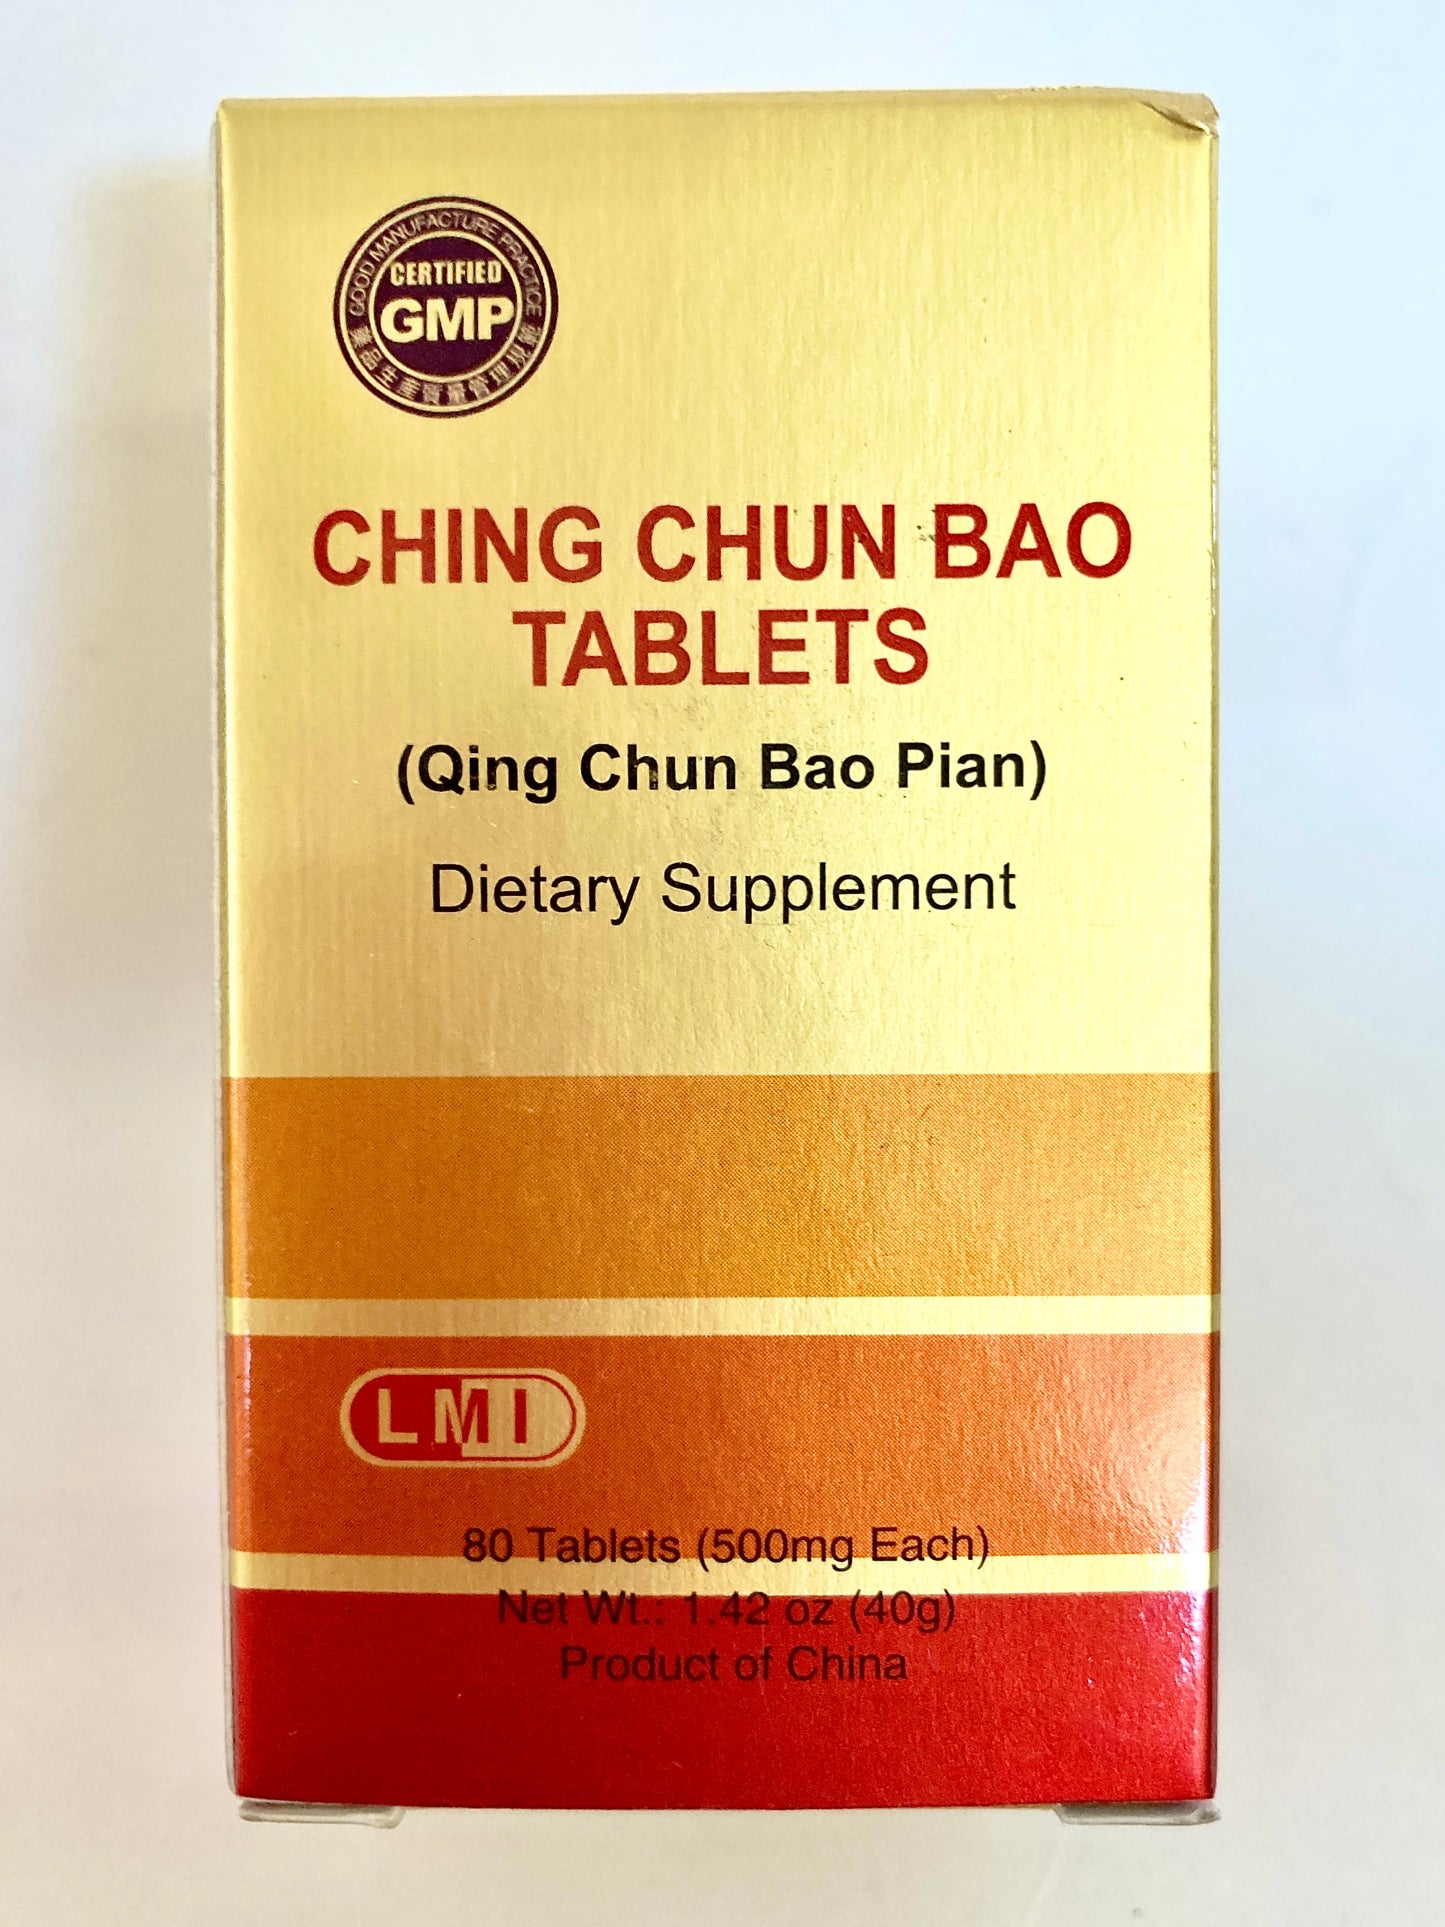 Ching Chun Bao Tablets (Qing Chuan Bao Pian)